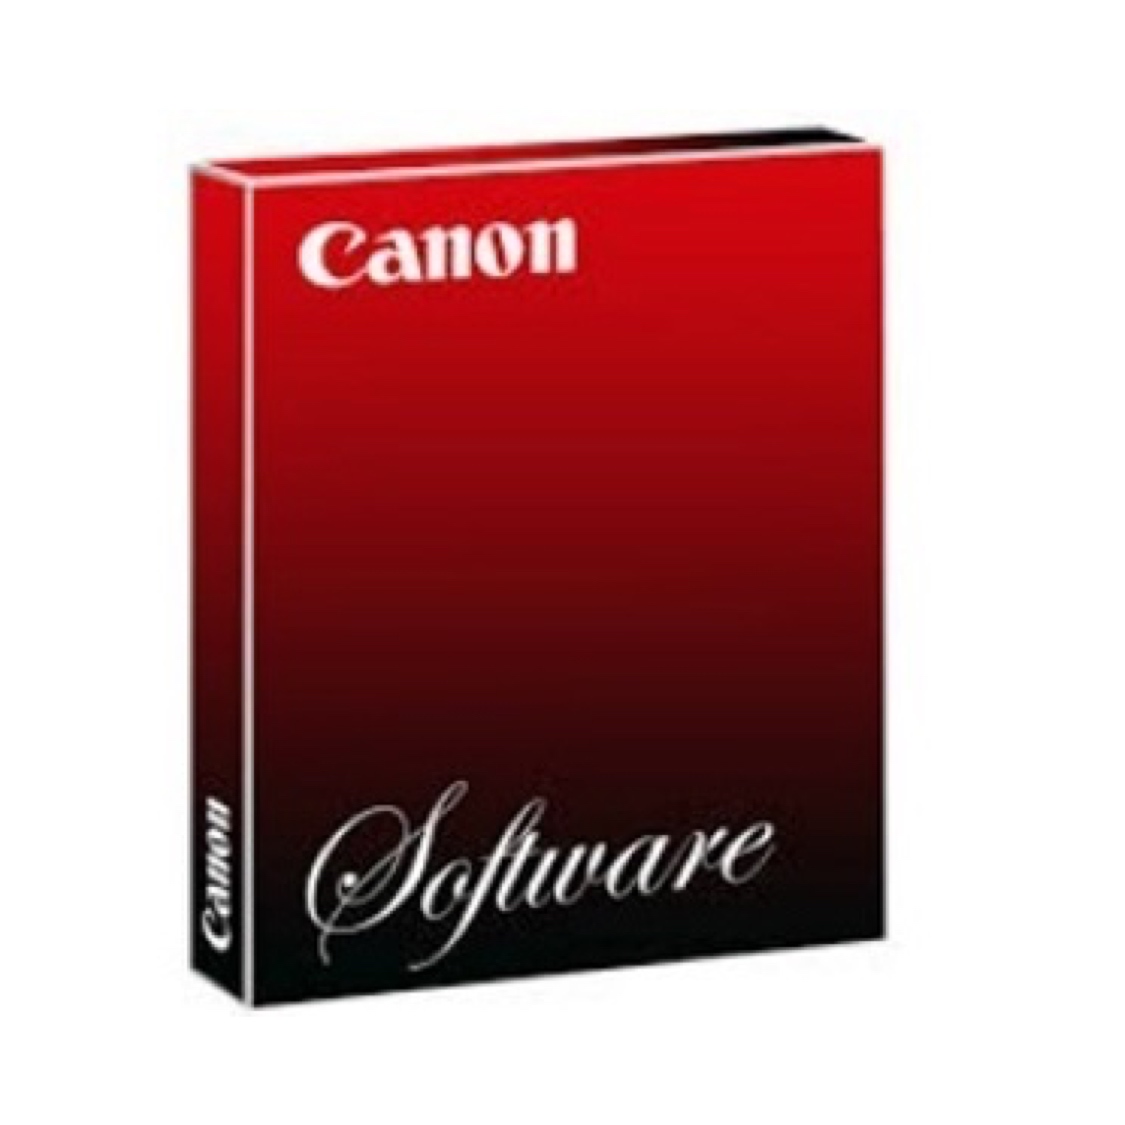 Canon комплект для универсальной рассылки с цифровой подписью пользователя Universal Send Digital User Signature Kit-C1@E